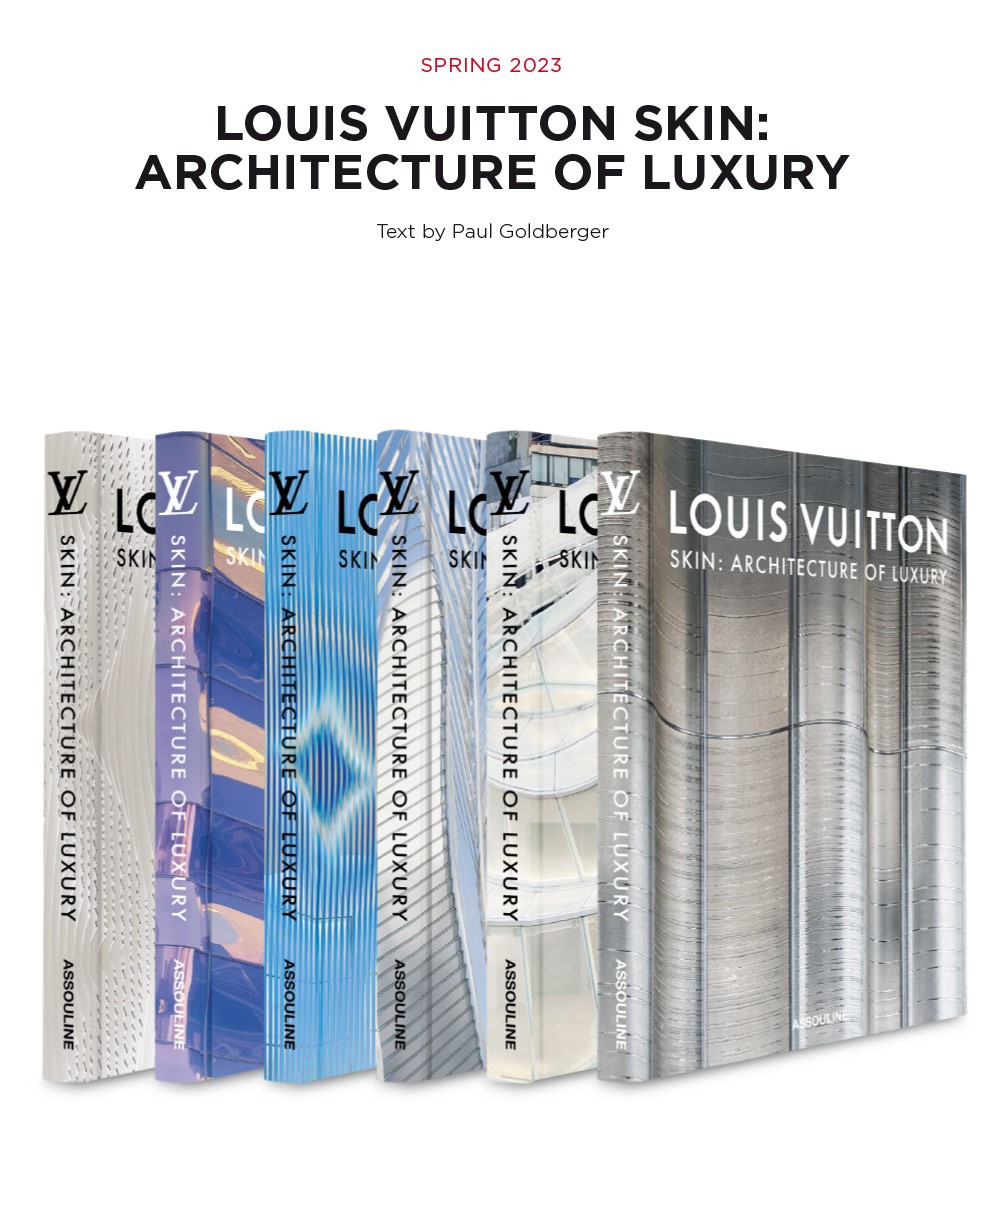 Hier sehen Sie: Bildband Louis Vuitton Skin: Architecture of Luxury%byManufacturer%